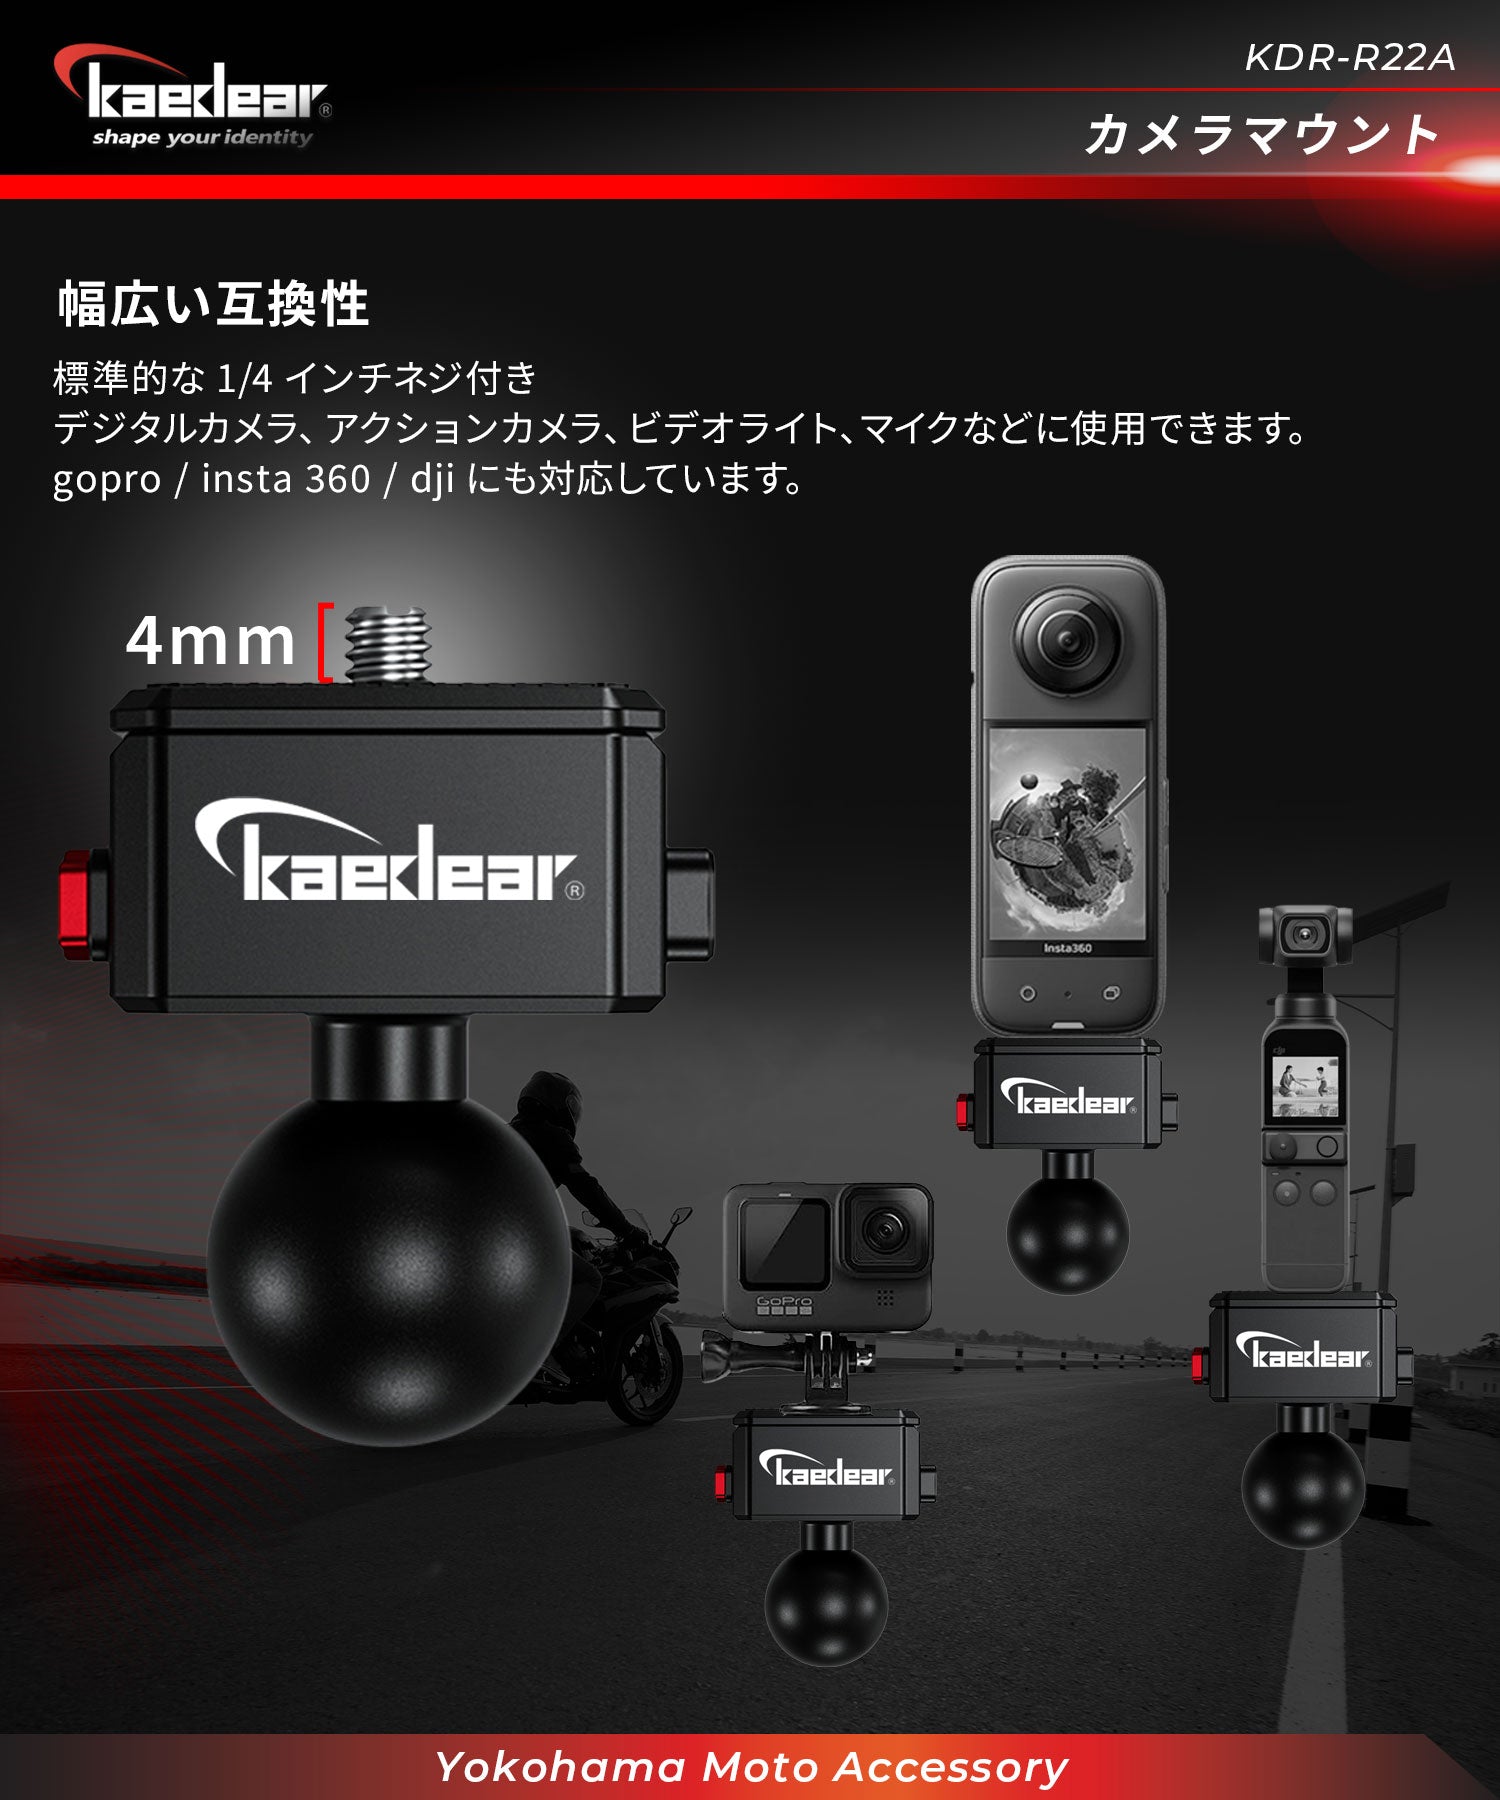 アルミ製 カメラマウント1/4 KDR-R22A